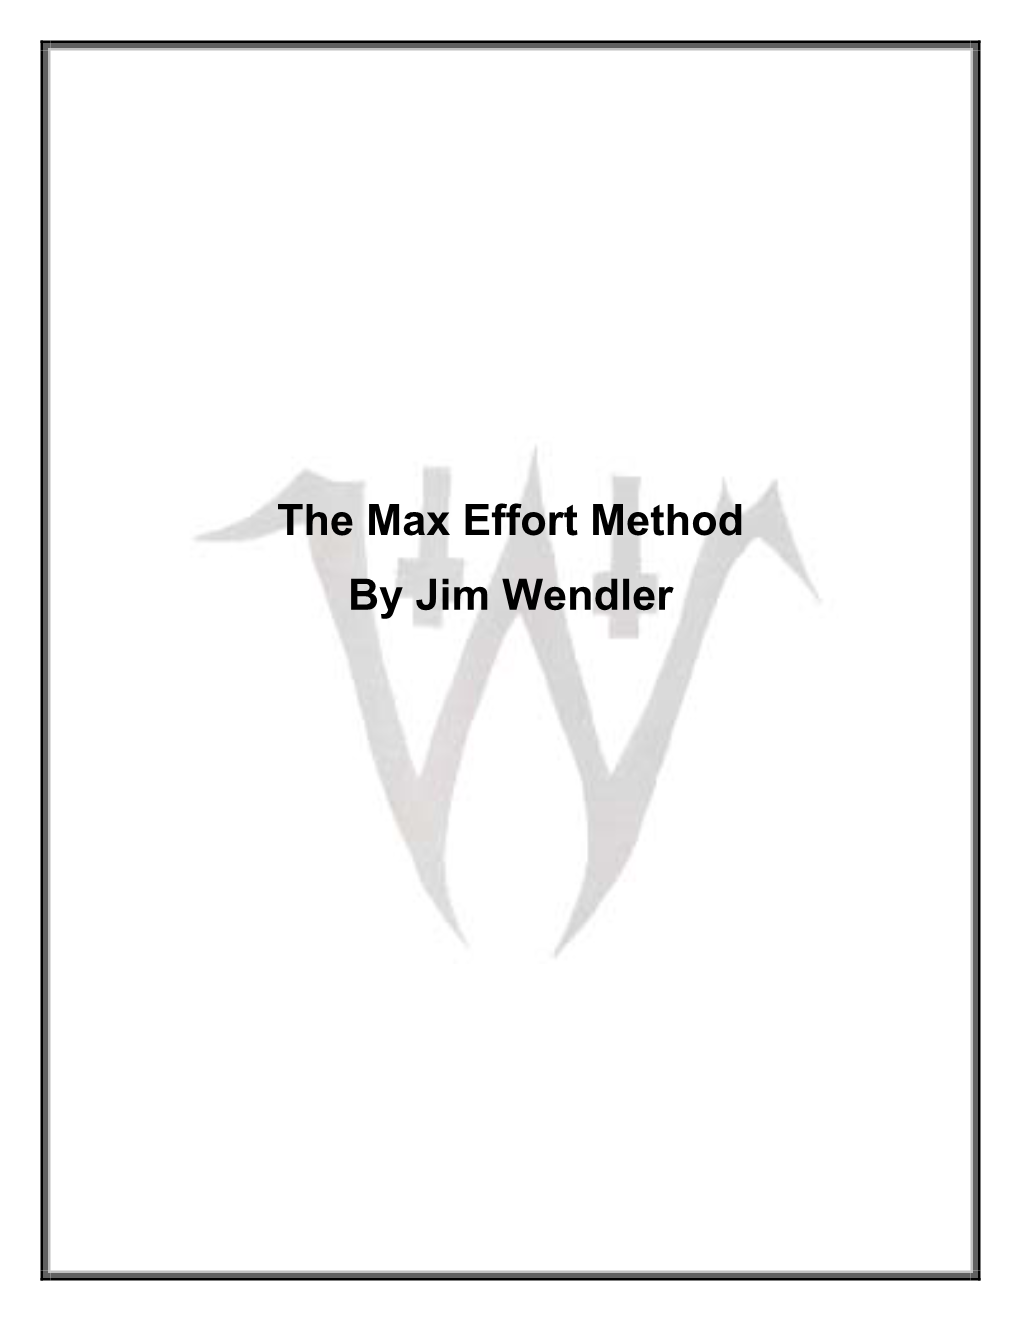 The Max Effort Method by Jim Wendler